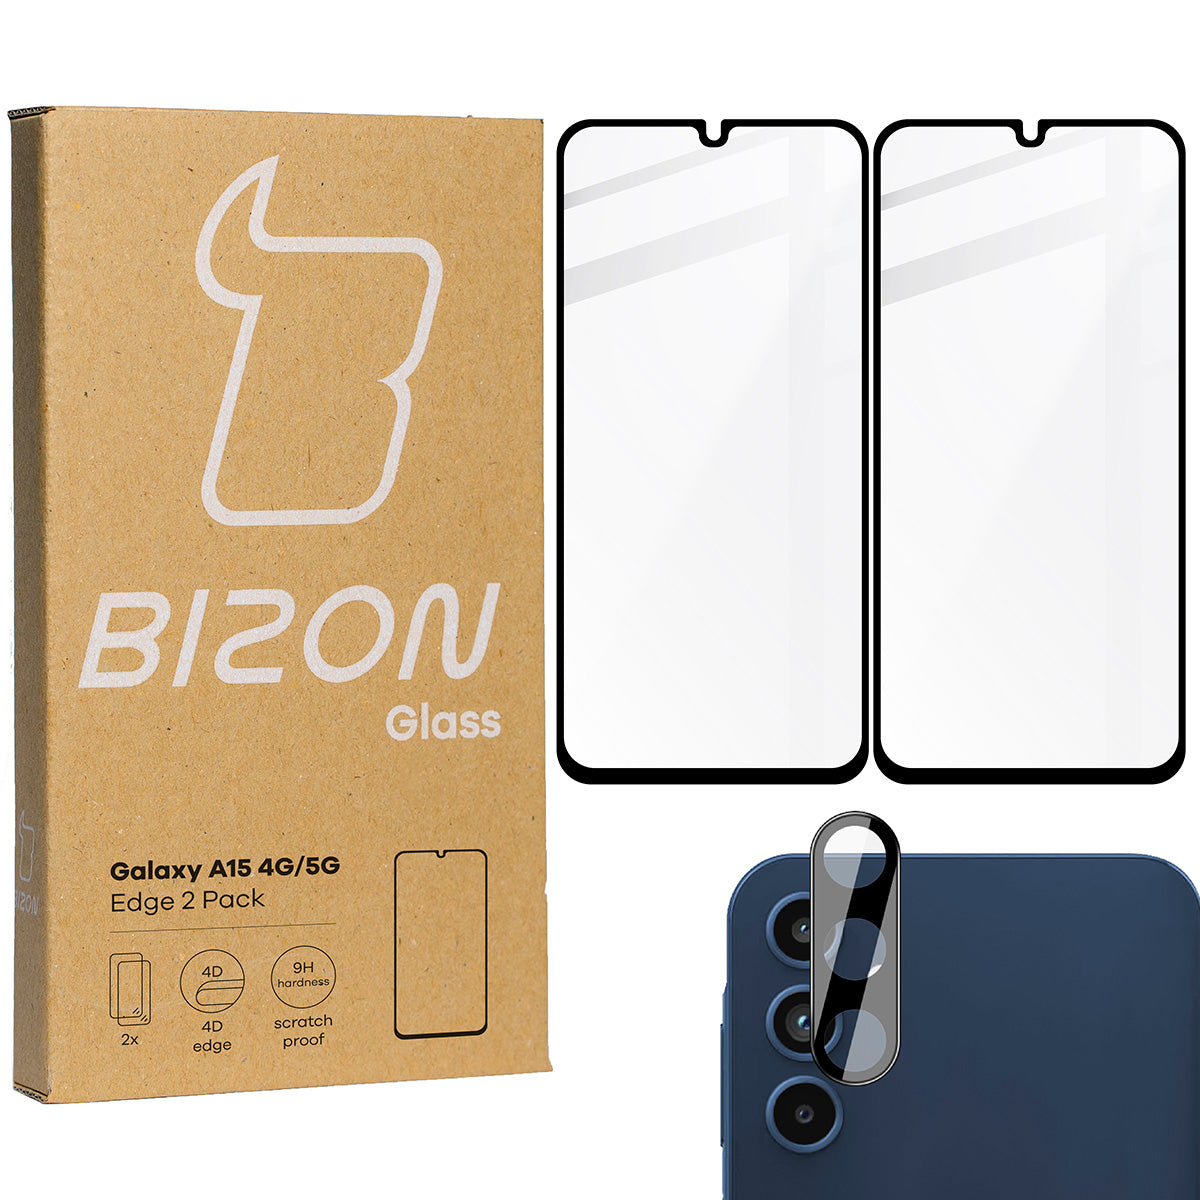 Gehärtetes Glas 2 Stück + Kameraschutz für Galaxy A15 4G/5G, Bizon Glass Edge 2 Pack, Schwarz